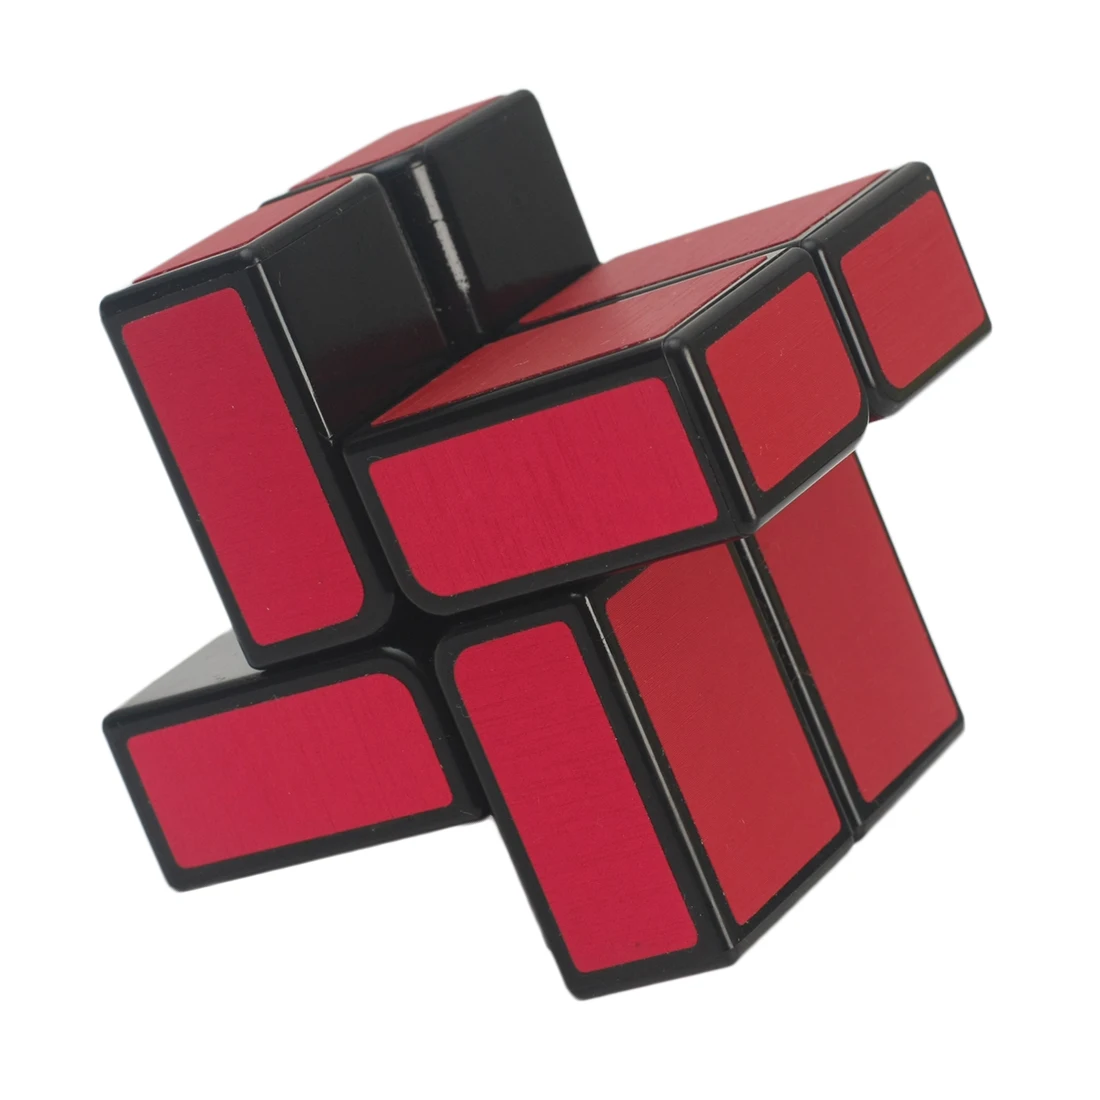 2019 Новое поступление HelloCube Cuboid прямоугольник 2x2x2 волшебный куб ветряная мельница скоростной куб-красный